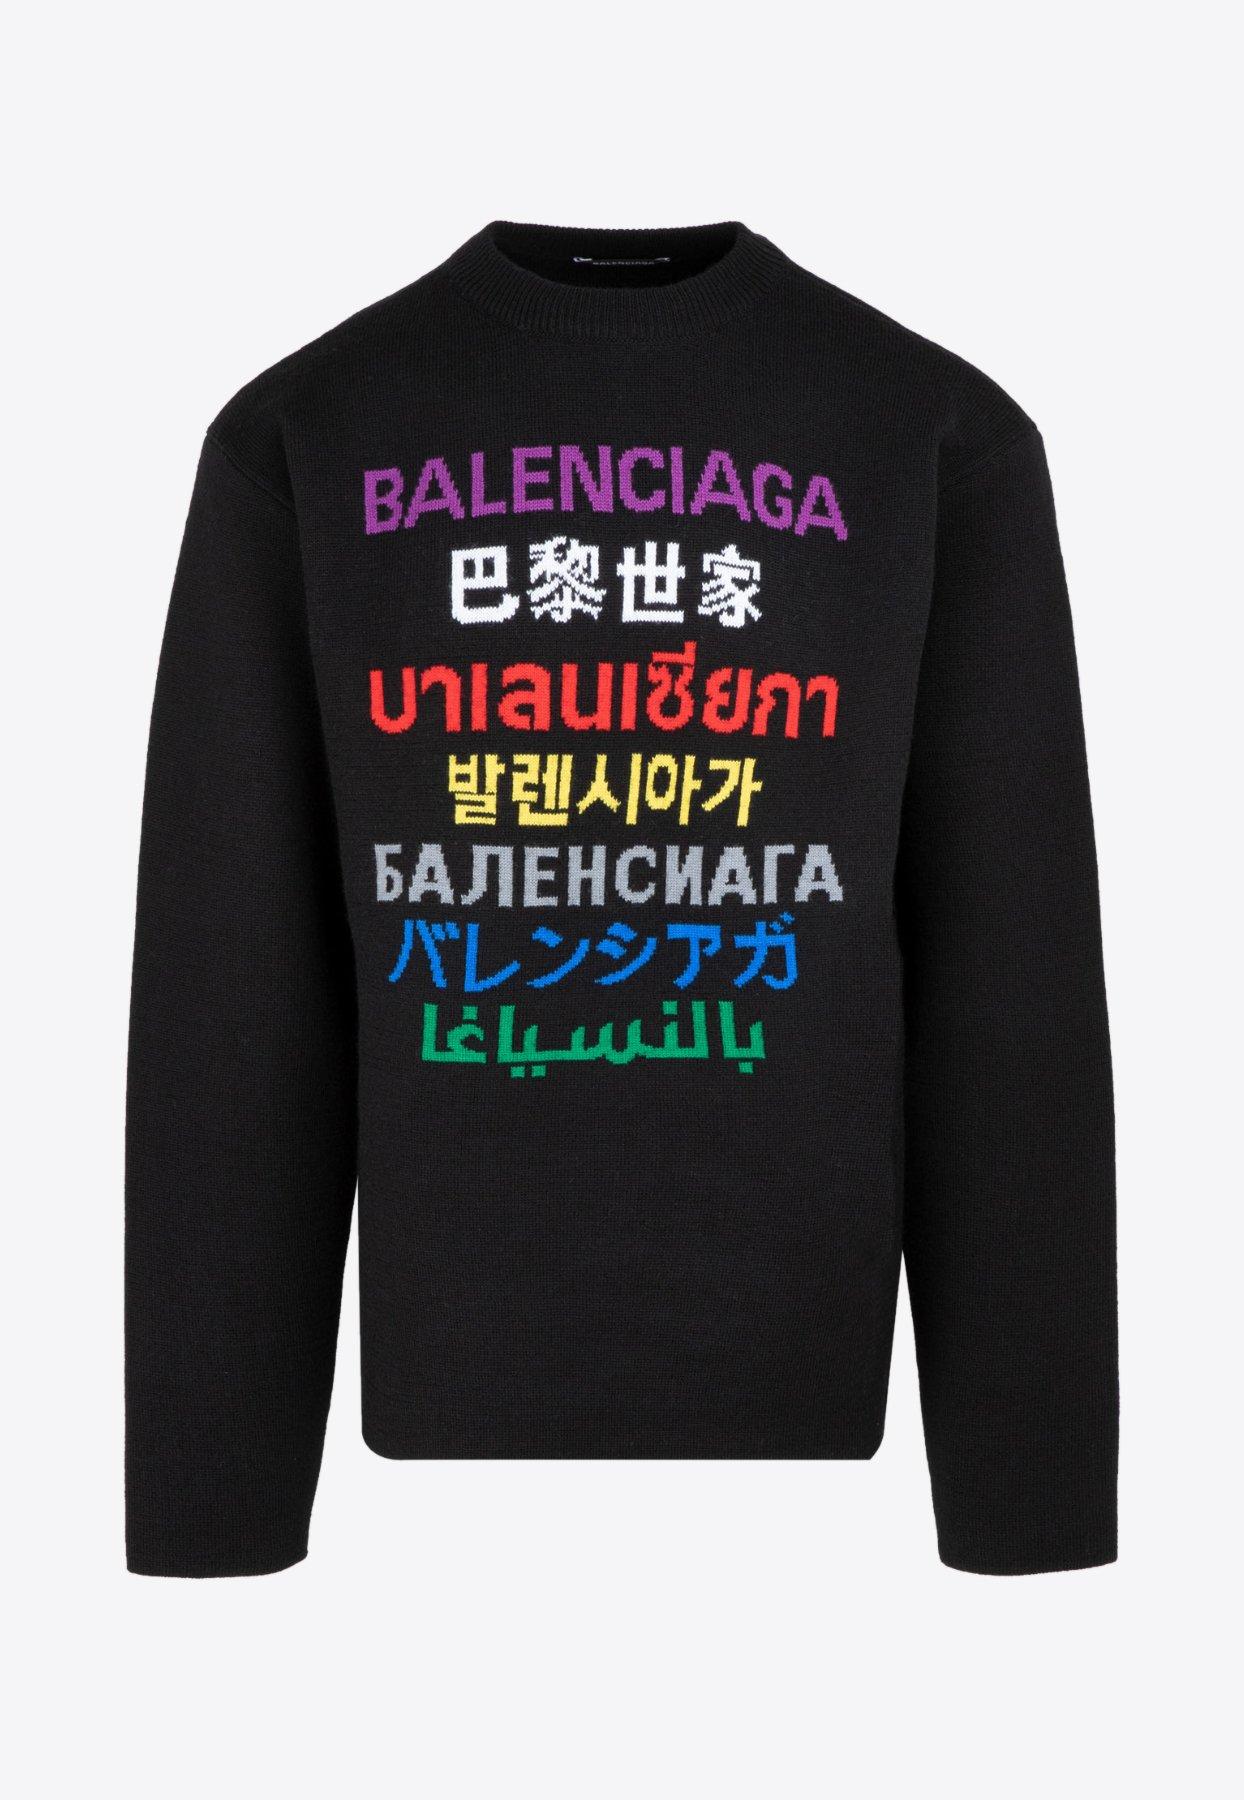 Balenciaga Wool Multi Language Logo Sweater M for Men - Lyst